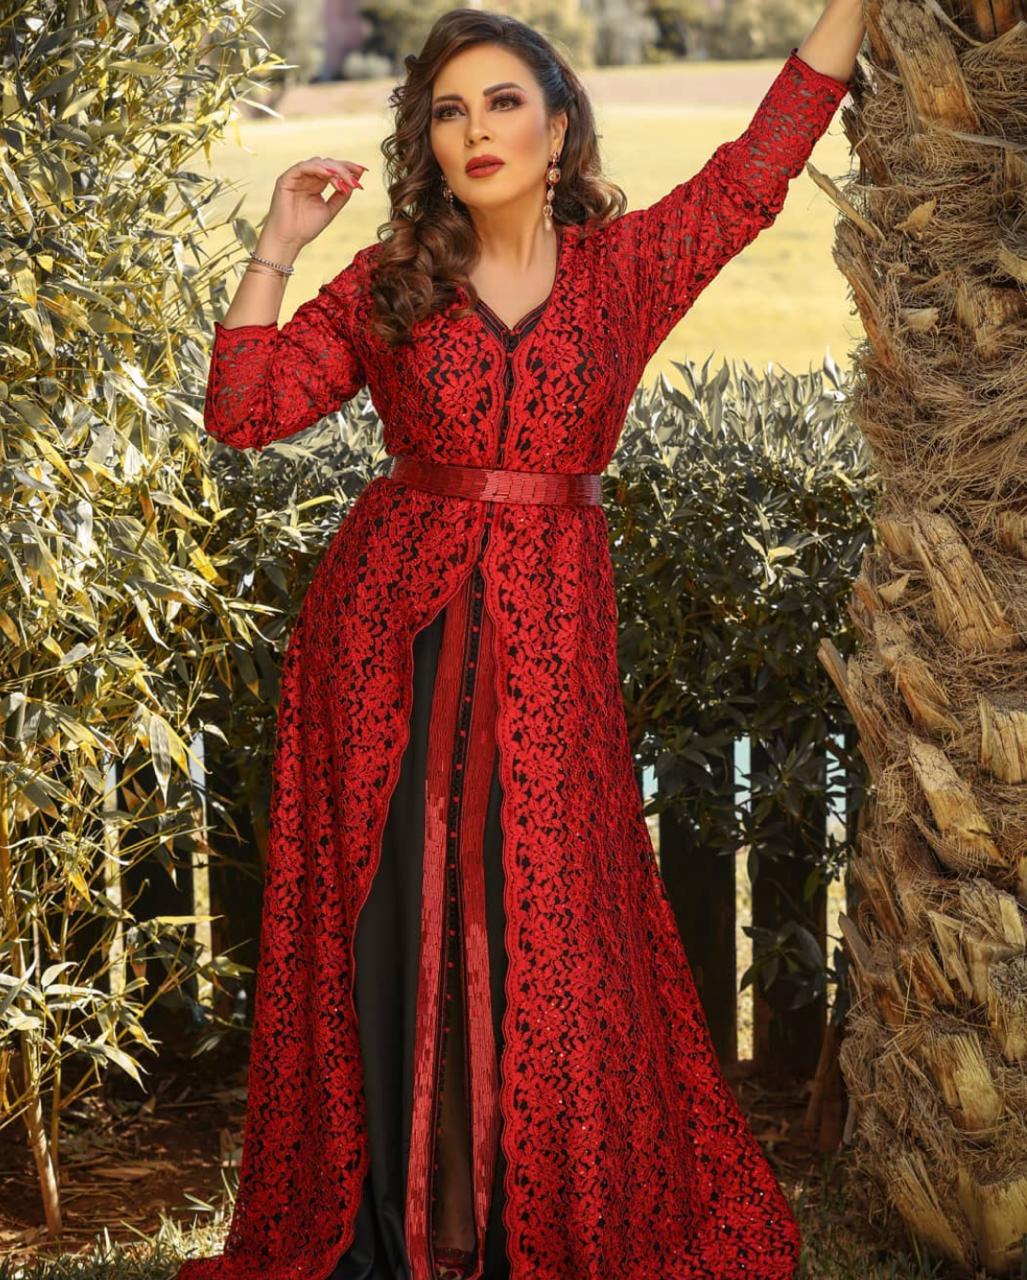 قفاطين مغربية باللون الاحمر للعرايس من وحي وإطلالة النجوم